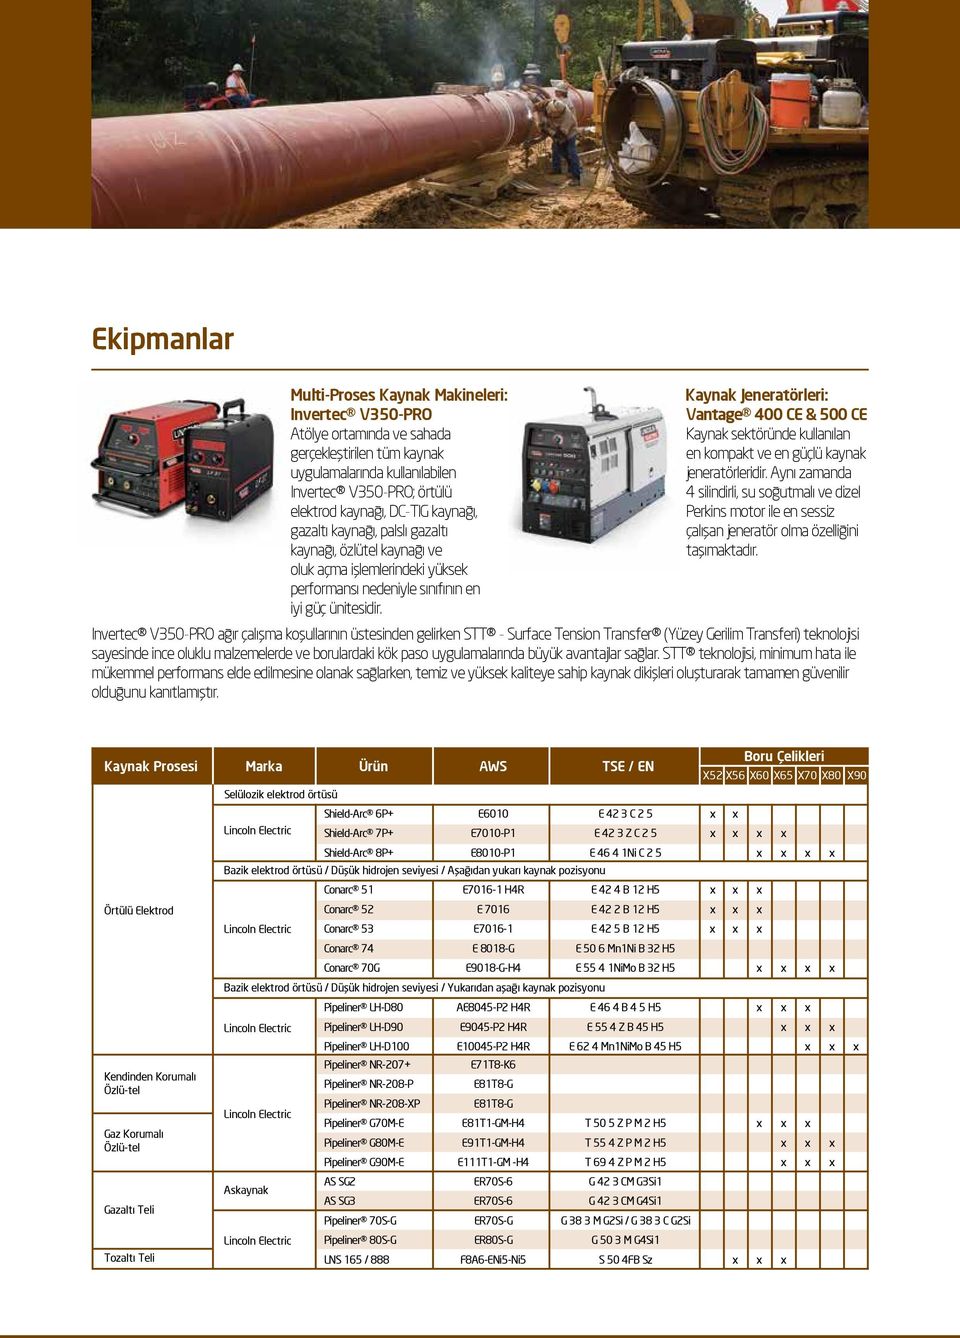 Kaynak Jeneratörleri: Vantage 400 CE & 500 CE Kaynak sektöründe kullanılan en kompakt ve en güçlü kaynak jeneratörleridir.